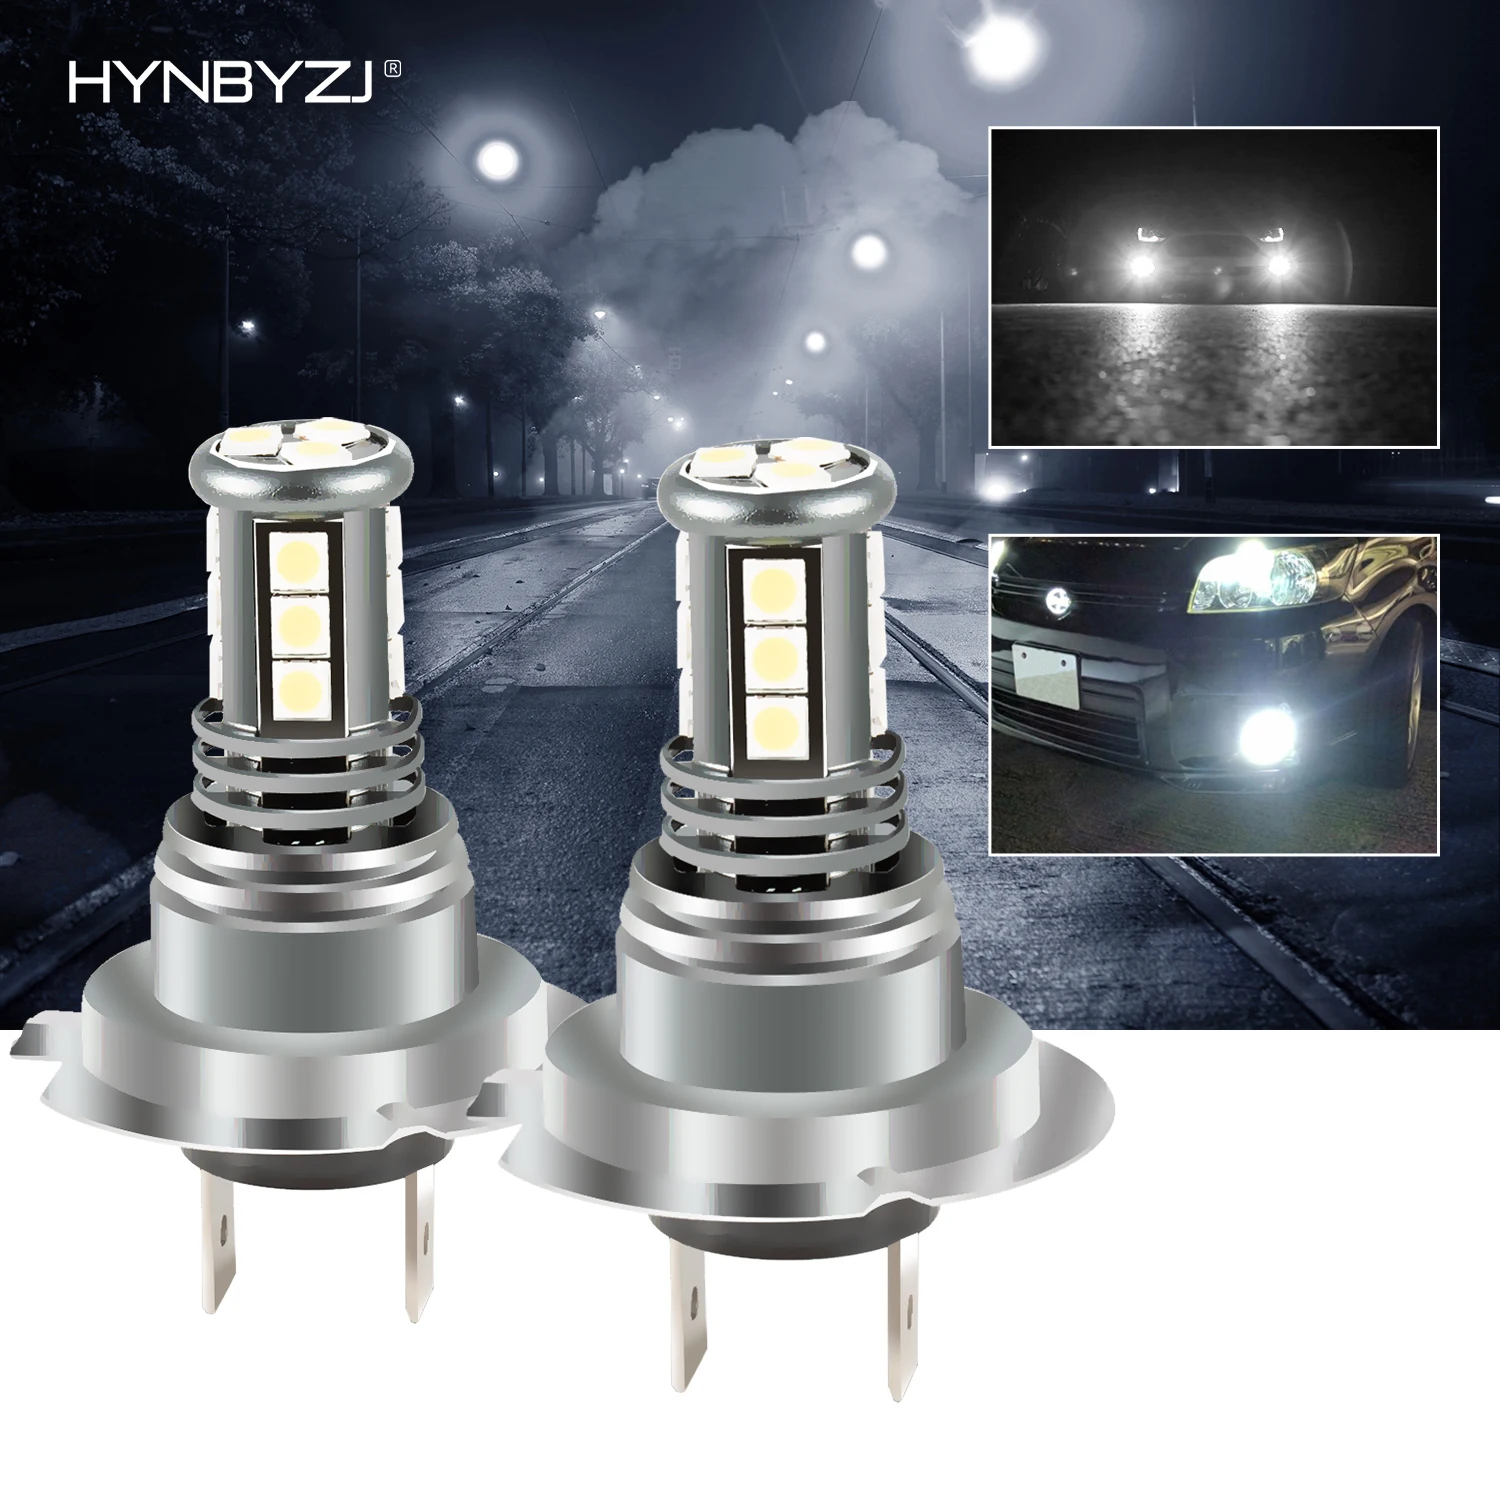 

HYNBYZJ 2Pcs H4 H7 H8 H11 H16 LED Car Fog Light Bulbs 9005 HB3 9006 HB4 Auto Driving Running Lamps 3200LM 40W 12V White 6500K